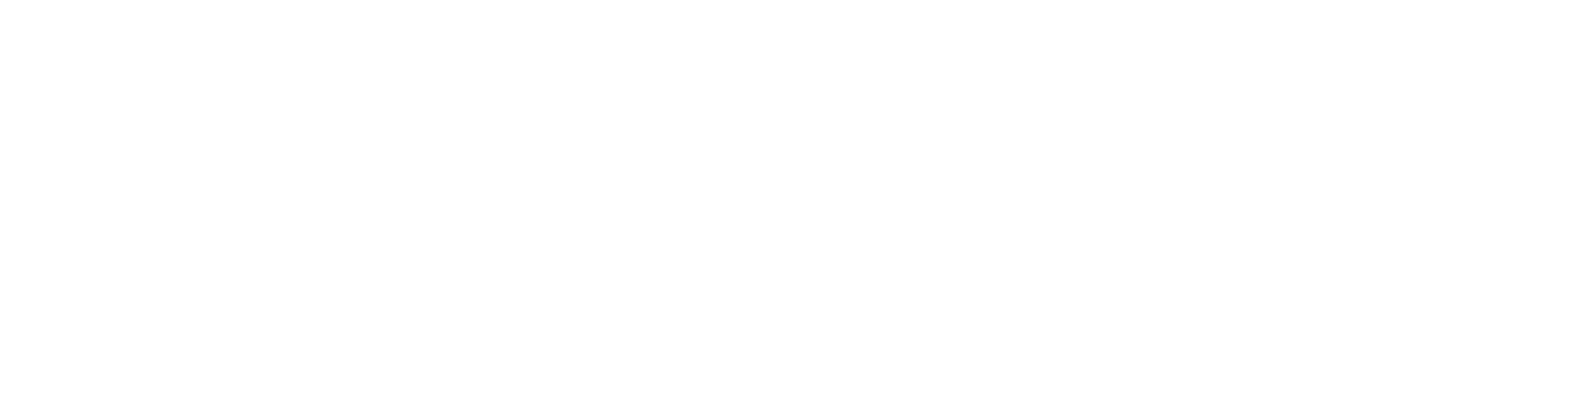 Allreal Holding logo large for dark backgrounds (transparent PNG)